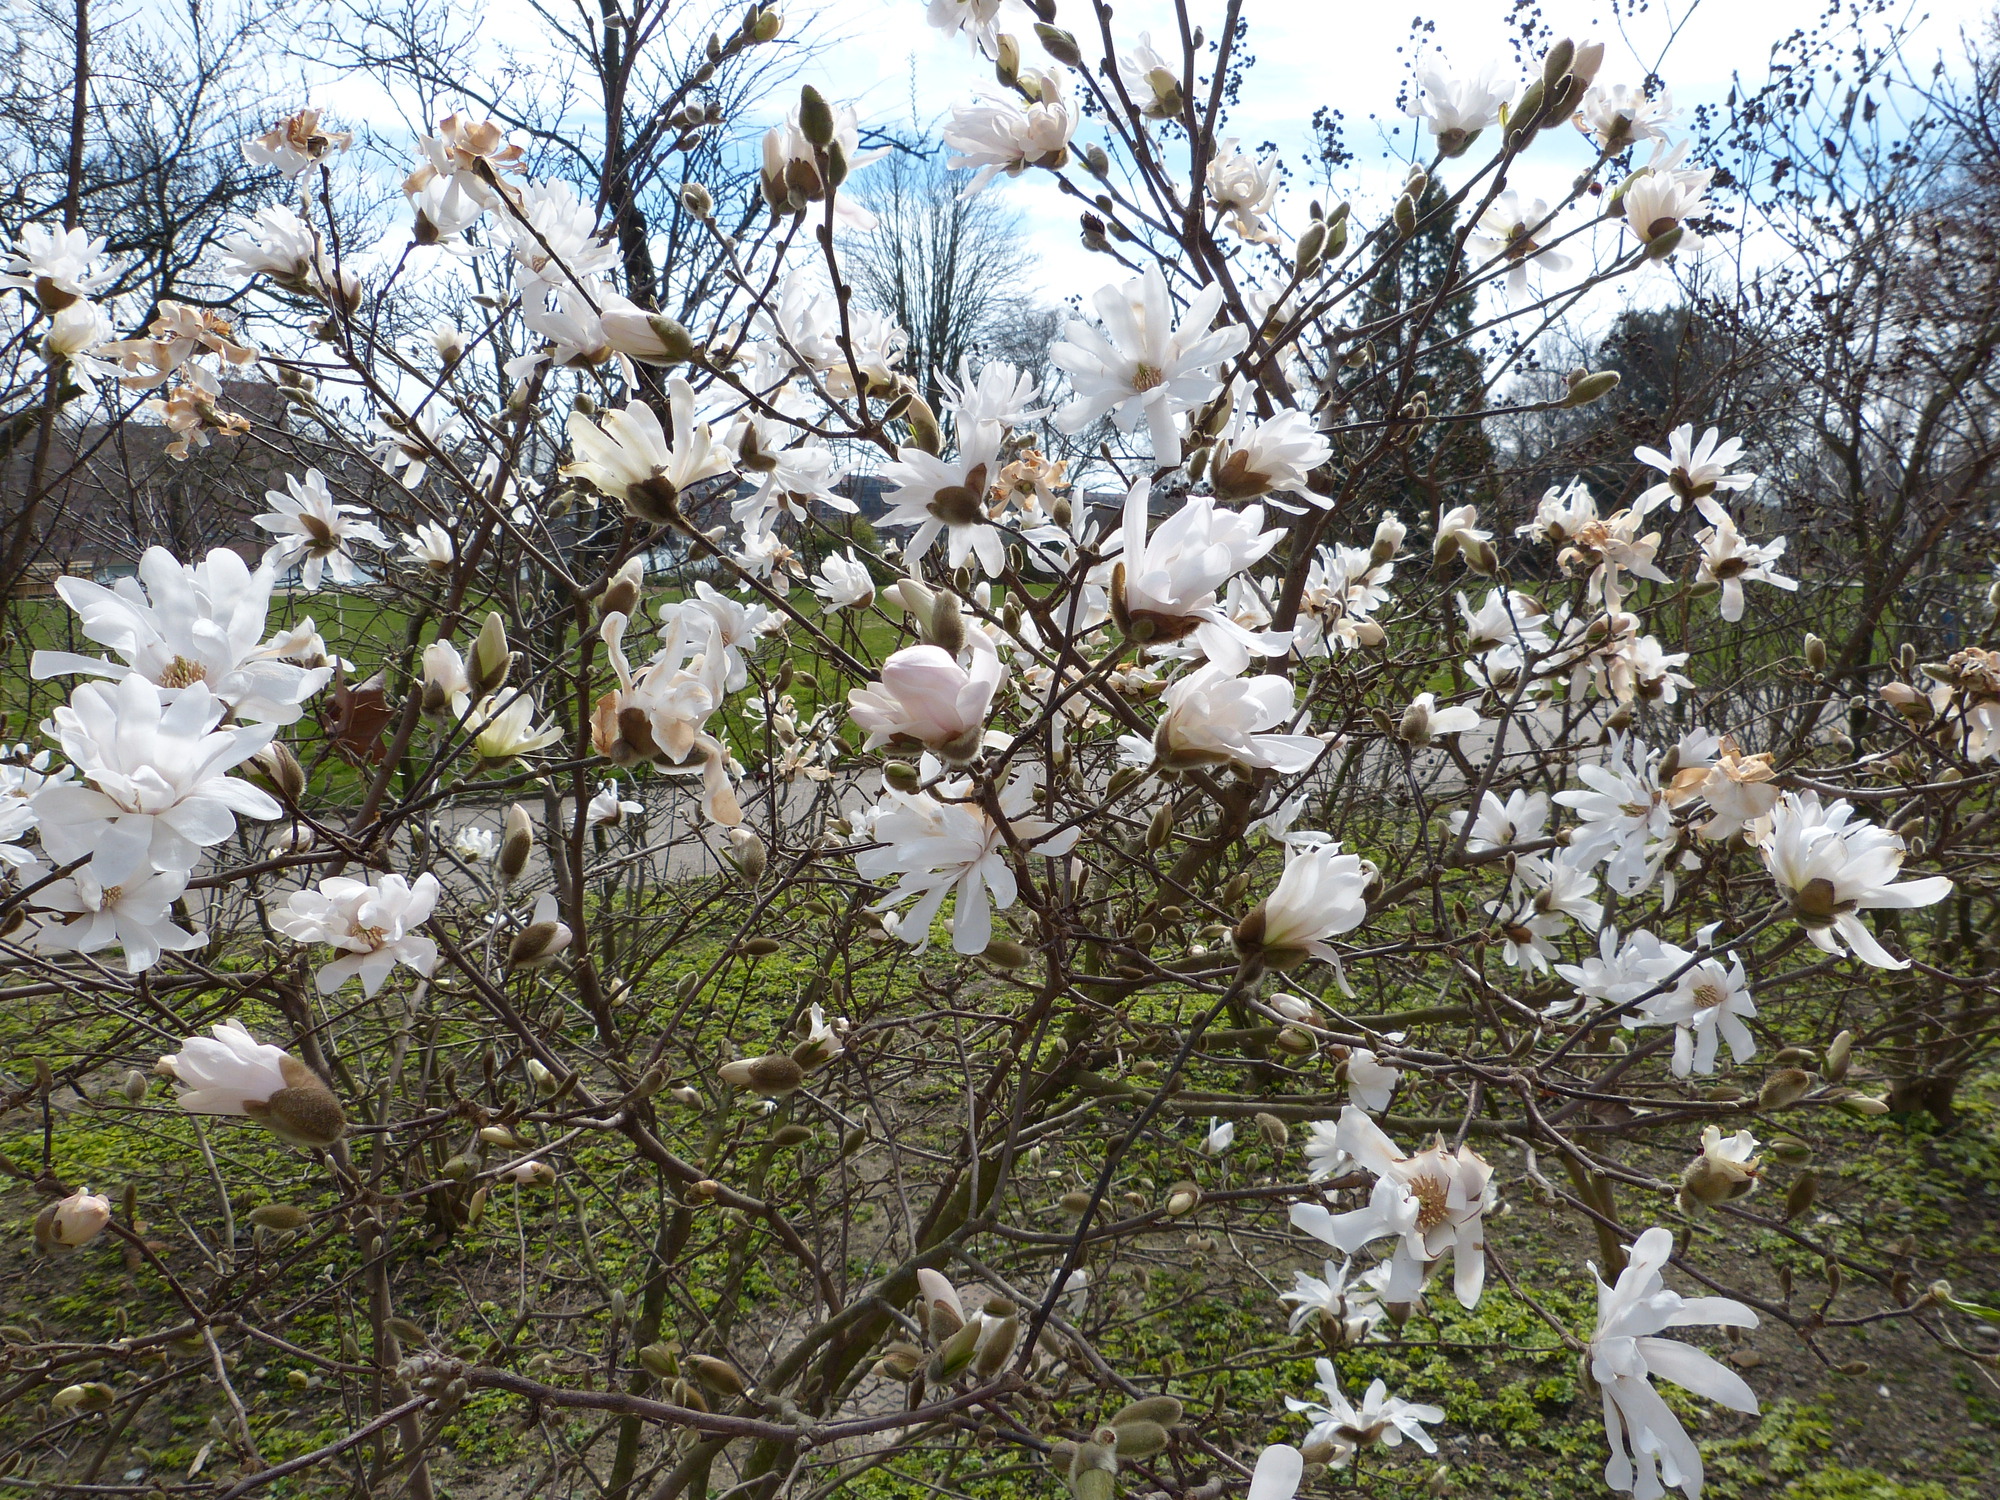 White magnolias